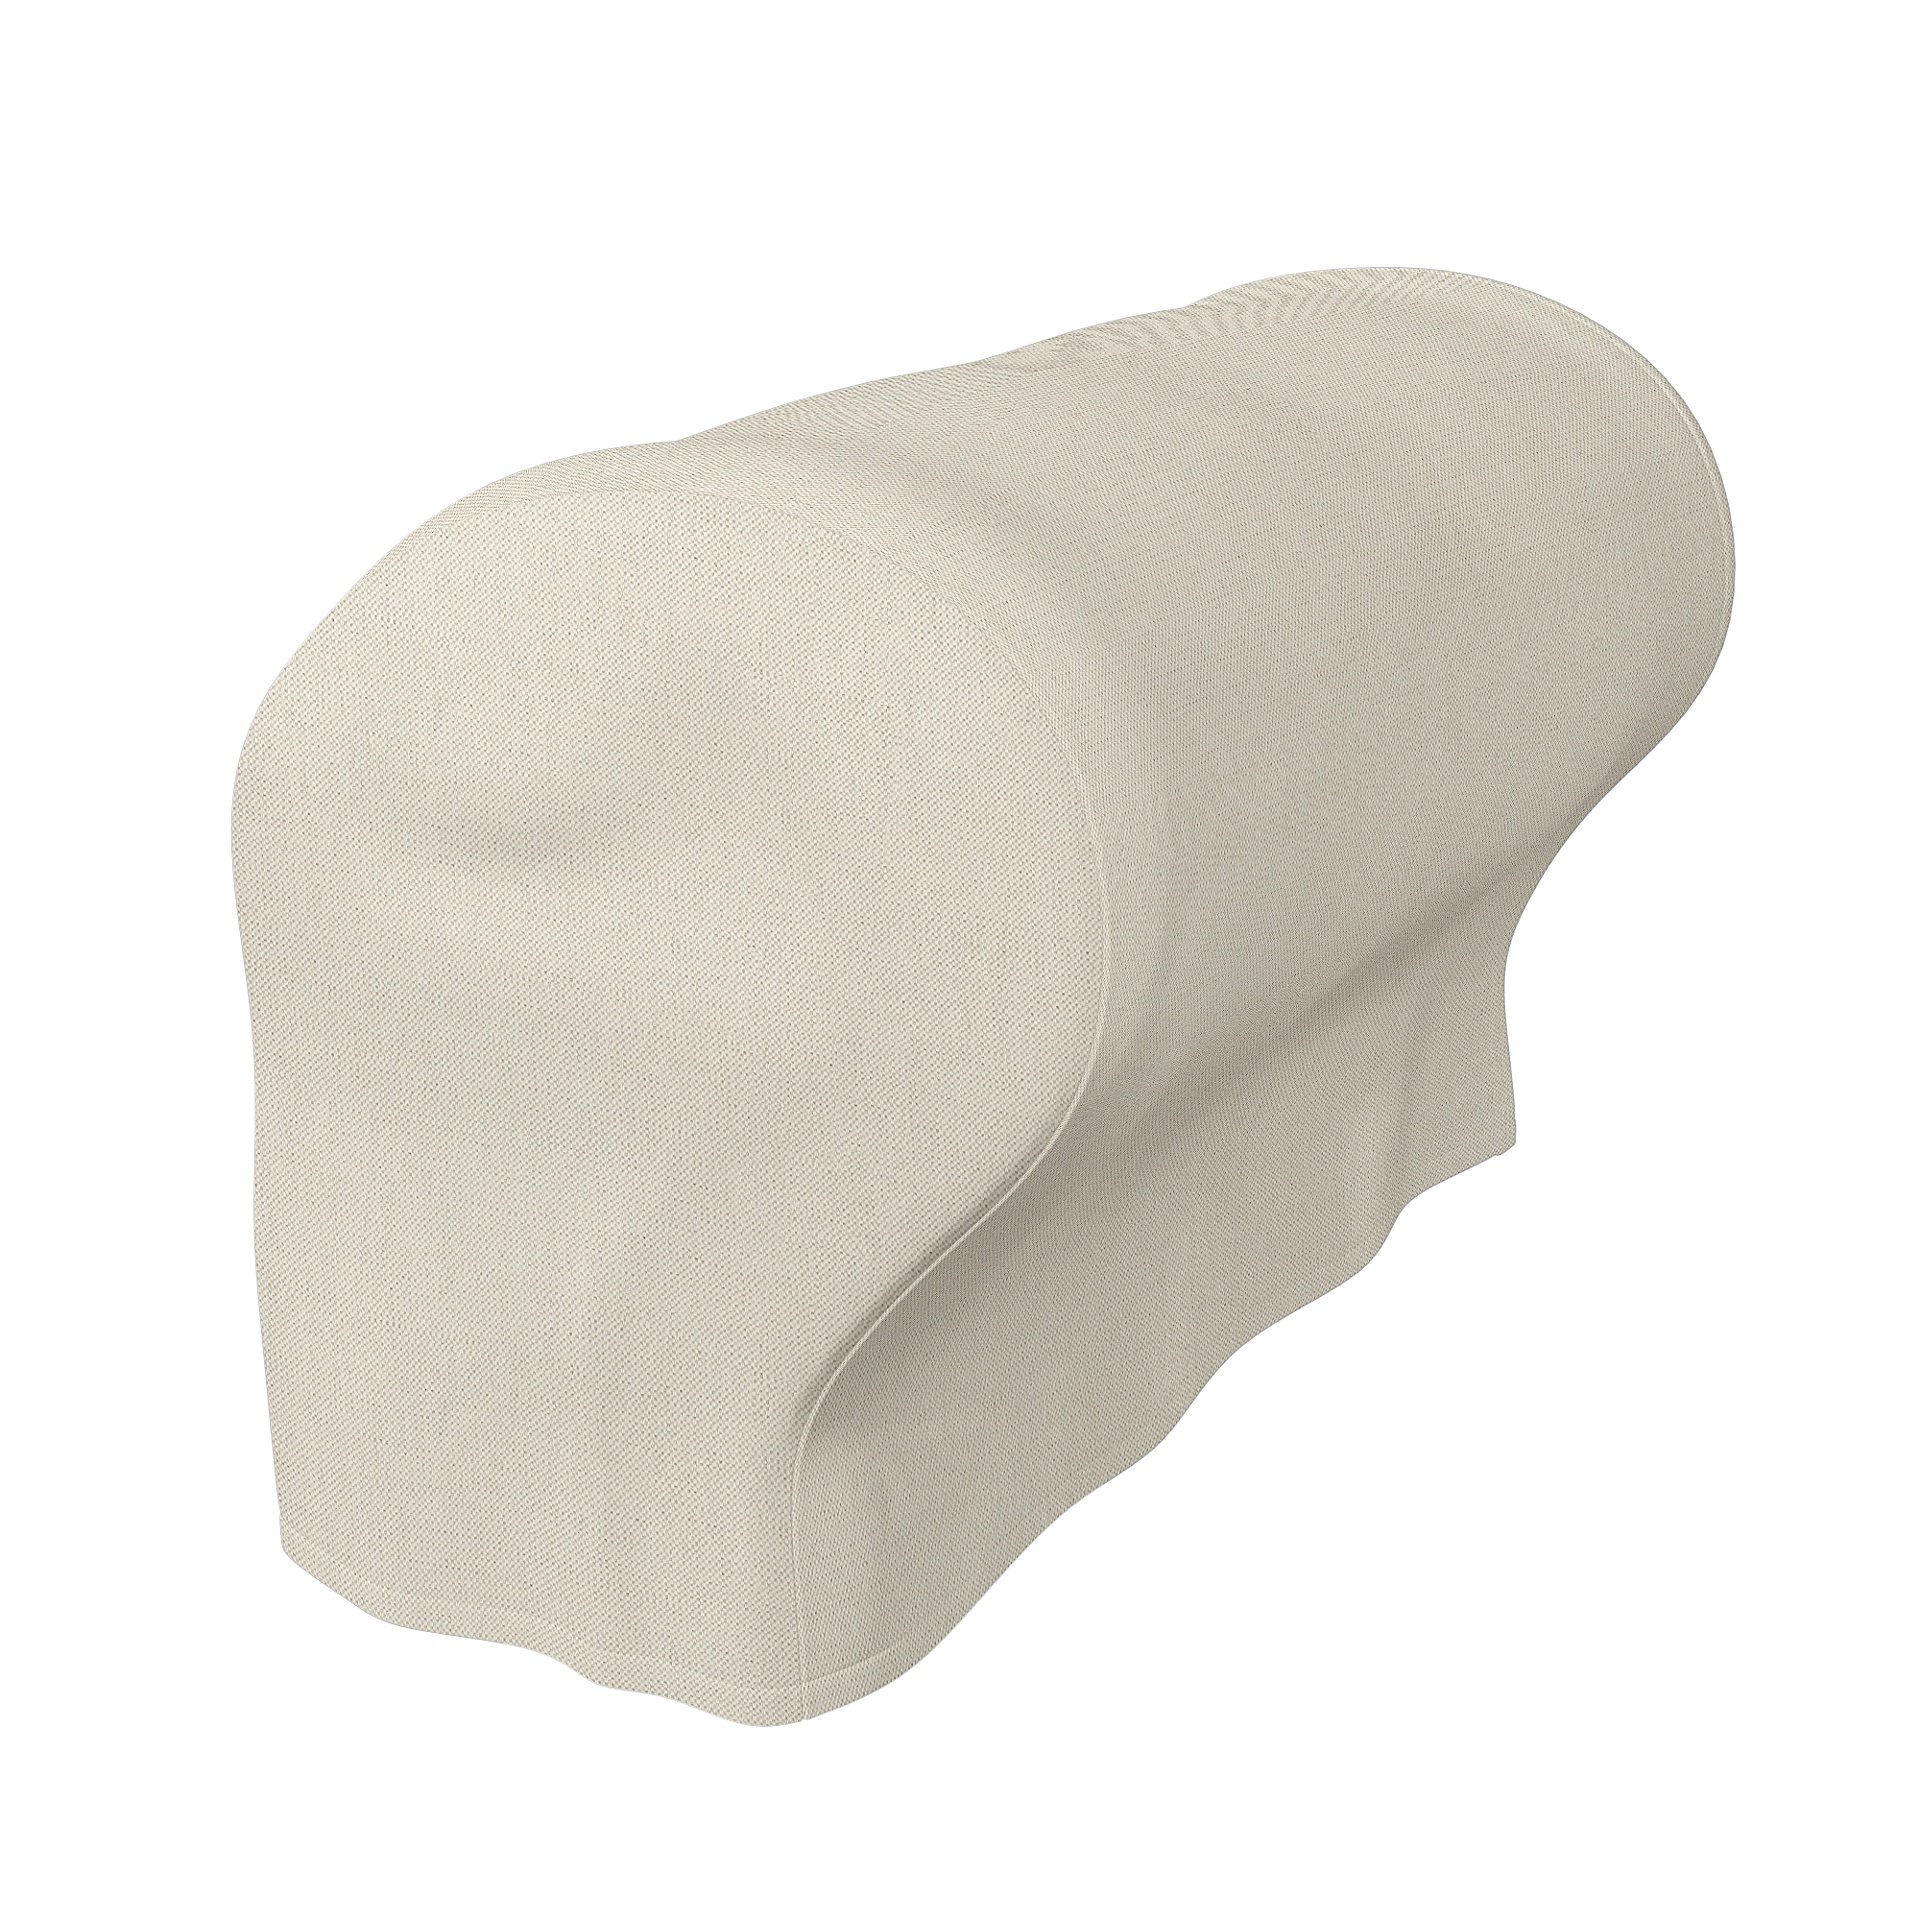 IKEA - Ektorp Armrest Protectors (One pair), Unbleached, Linen - Bemz